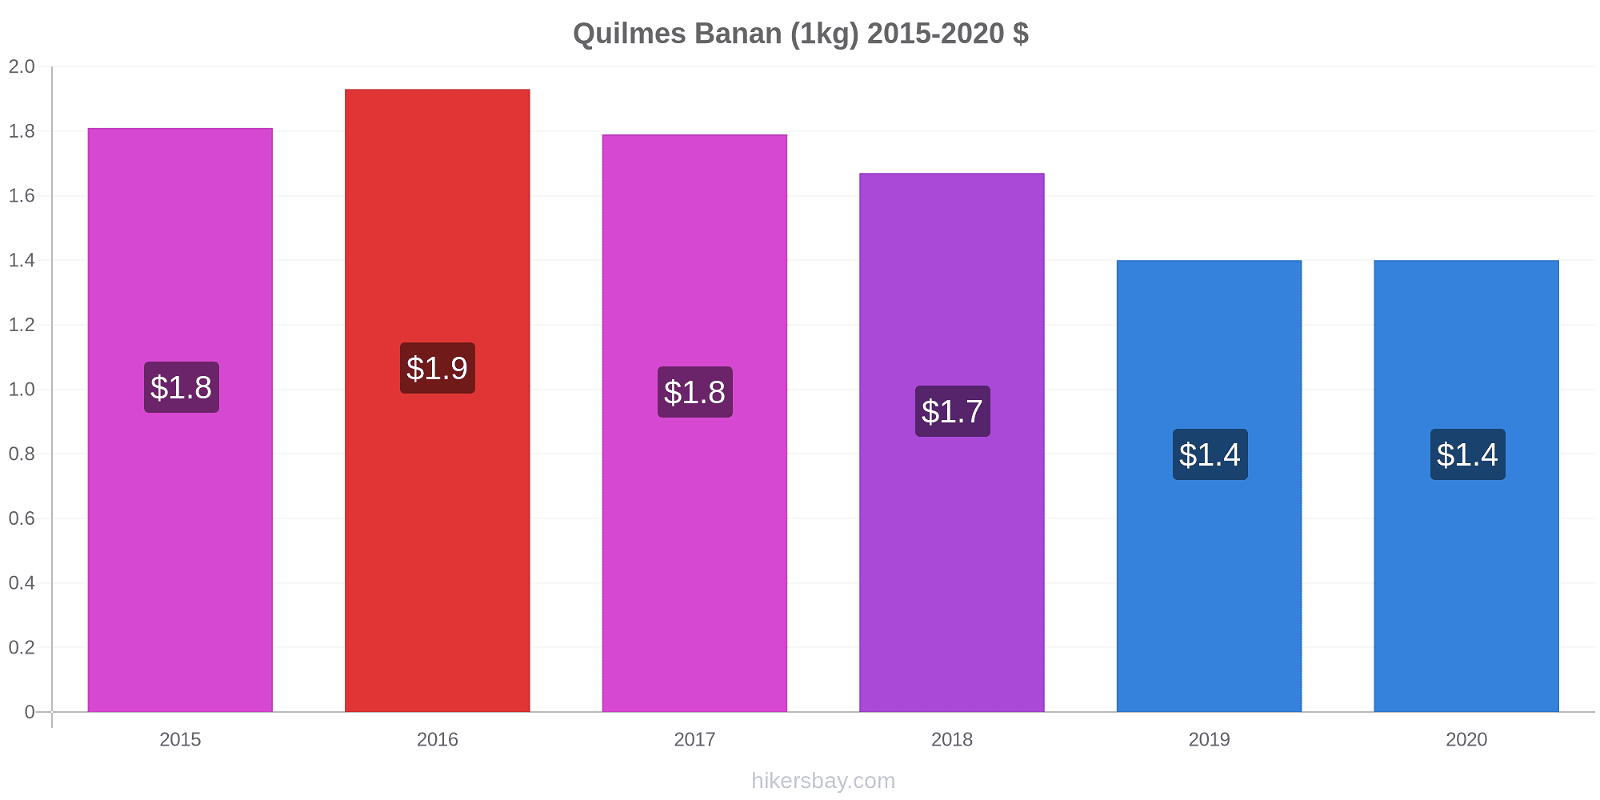 Quilmes prisændringer Banan (1kg) hikersbay.com